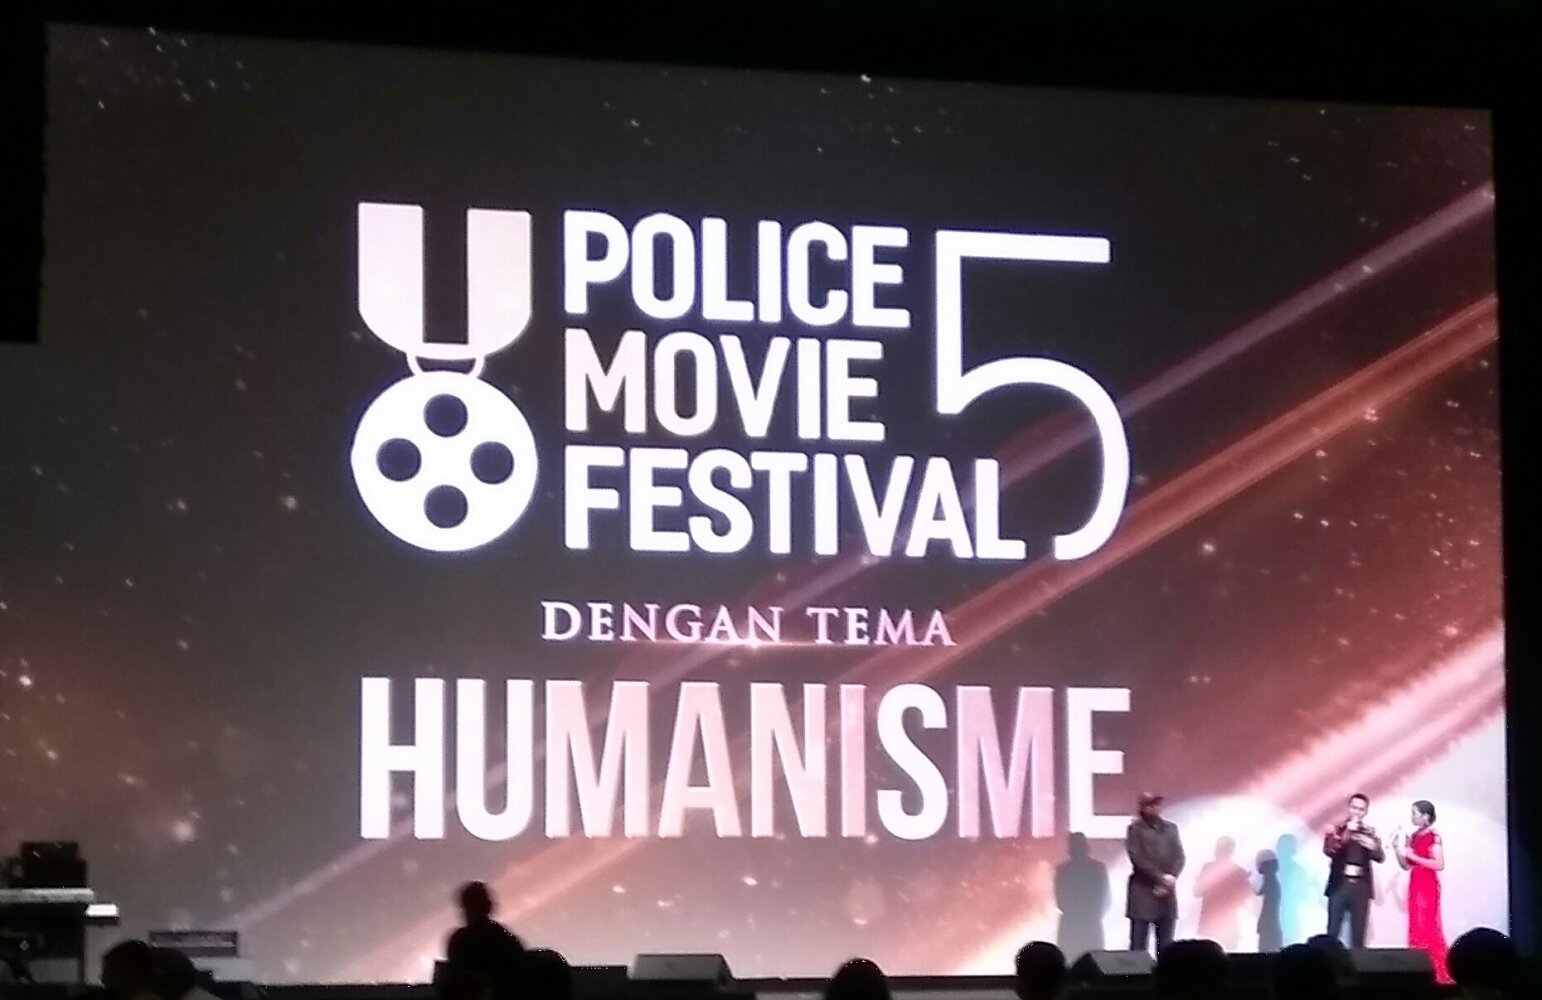 Police Movie Festival 5